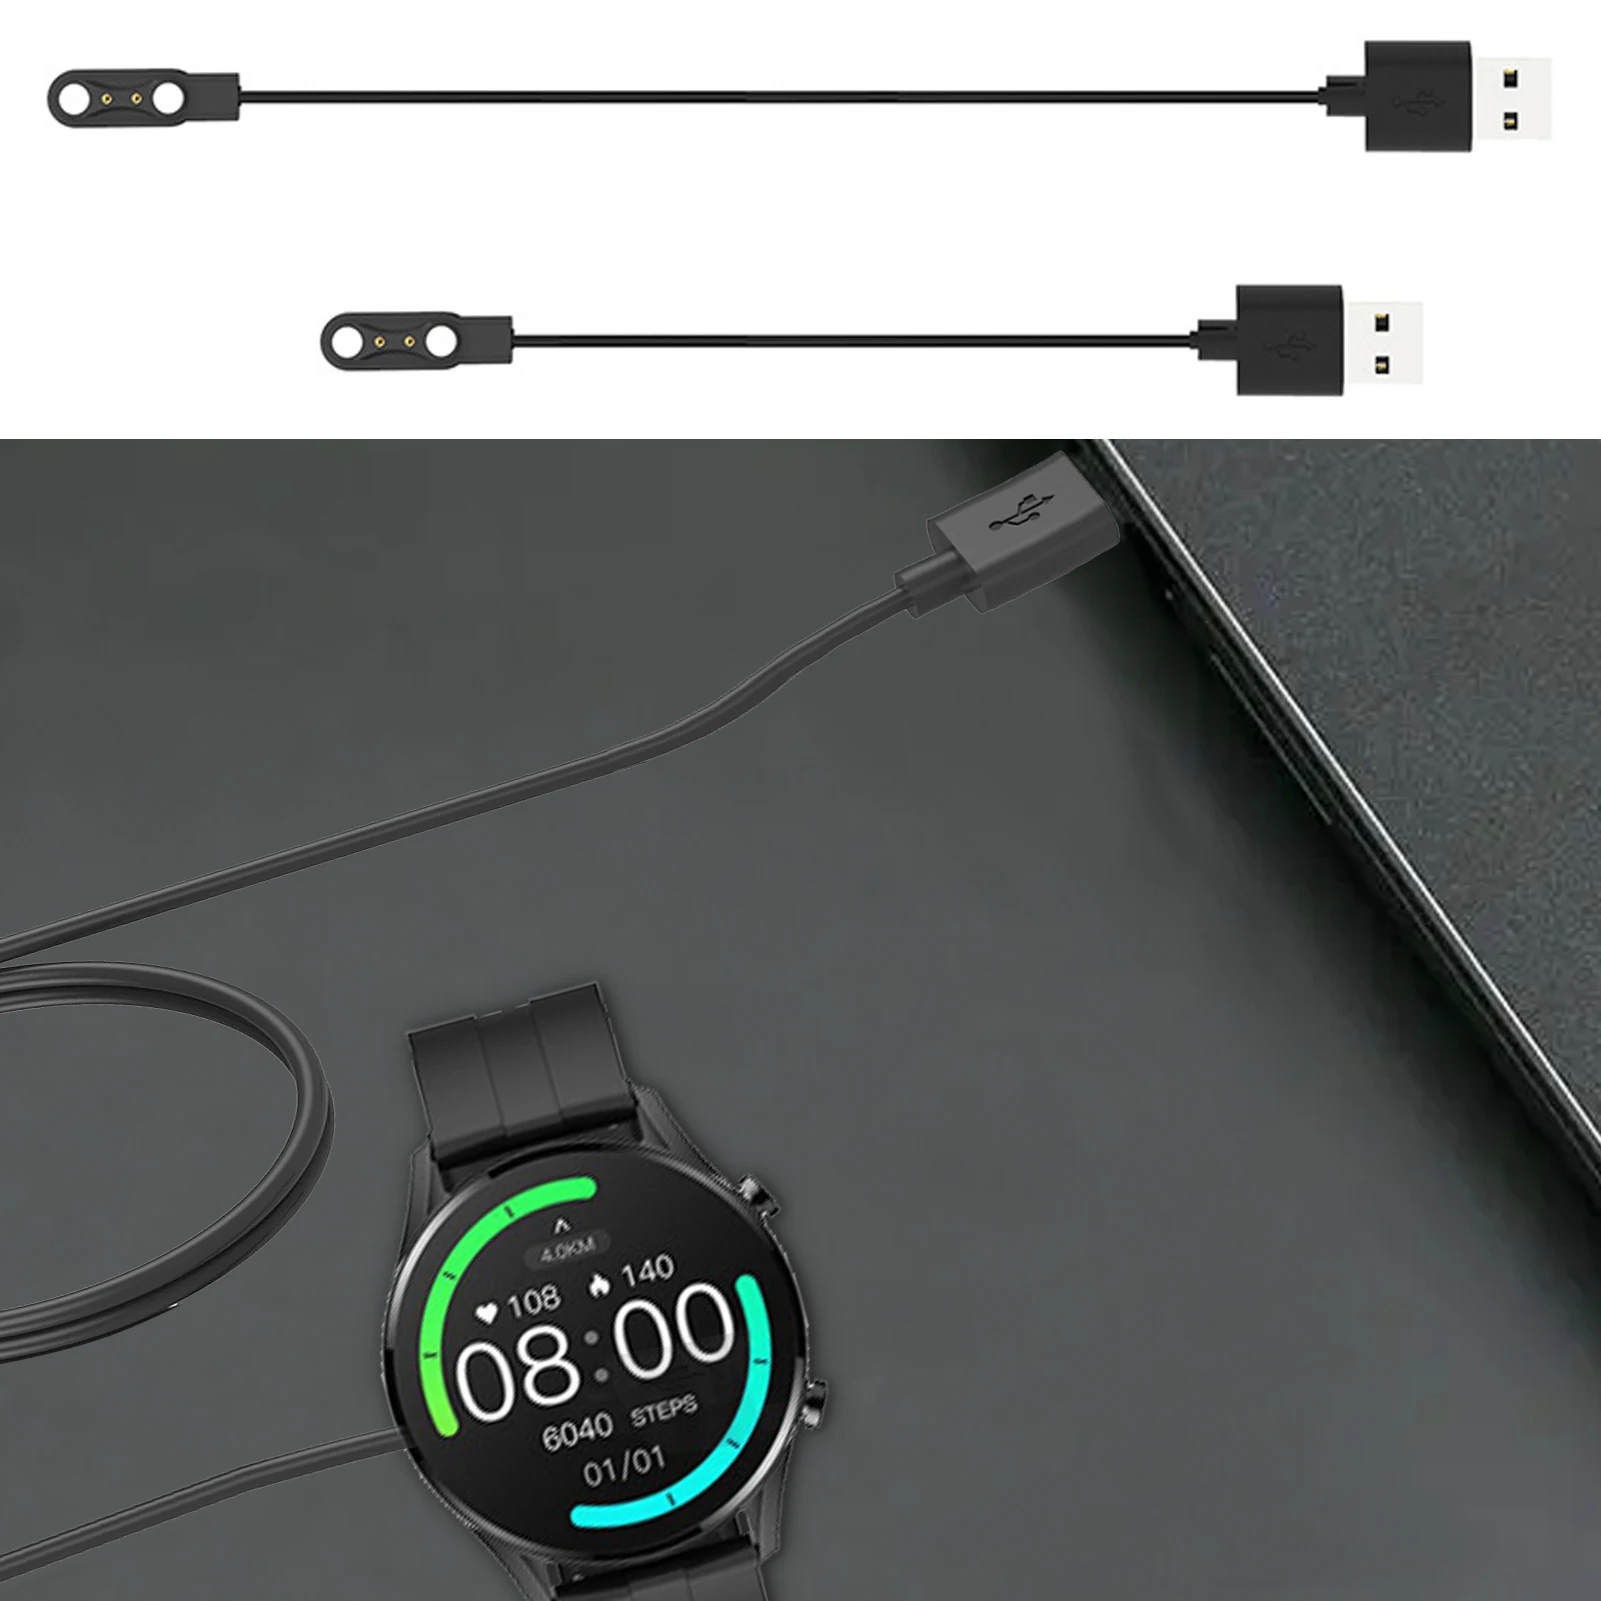 

Зарядный кабель для XiaomiMi Band, USB-кабель для зарядки умных часов MiBand, сменный провод, совместимый с IMILAB W12